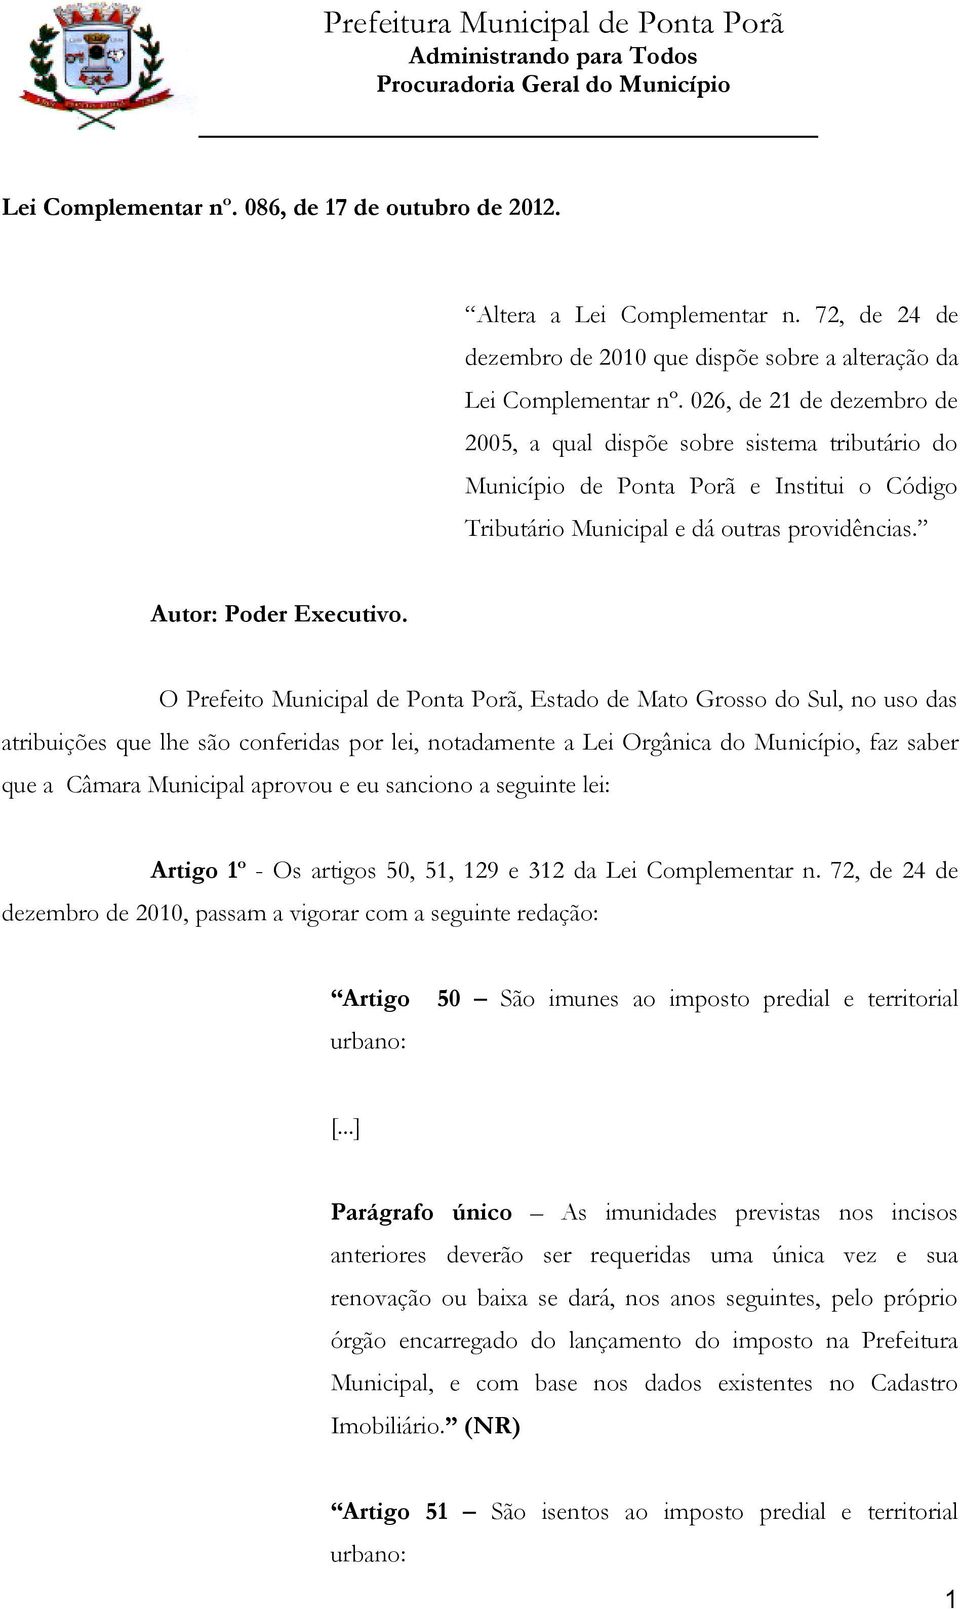 O Prefeito Municipal de Ponta Porã, Estado de Mato Grosso do Sul, no uso das atribuições que lhe são conferidas por lei, notadamente a Lei Orgânica do Município, faz saber que a Câmara Municipal